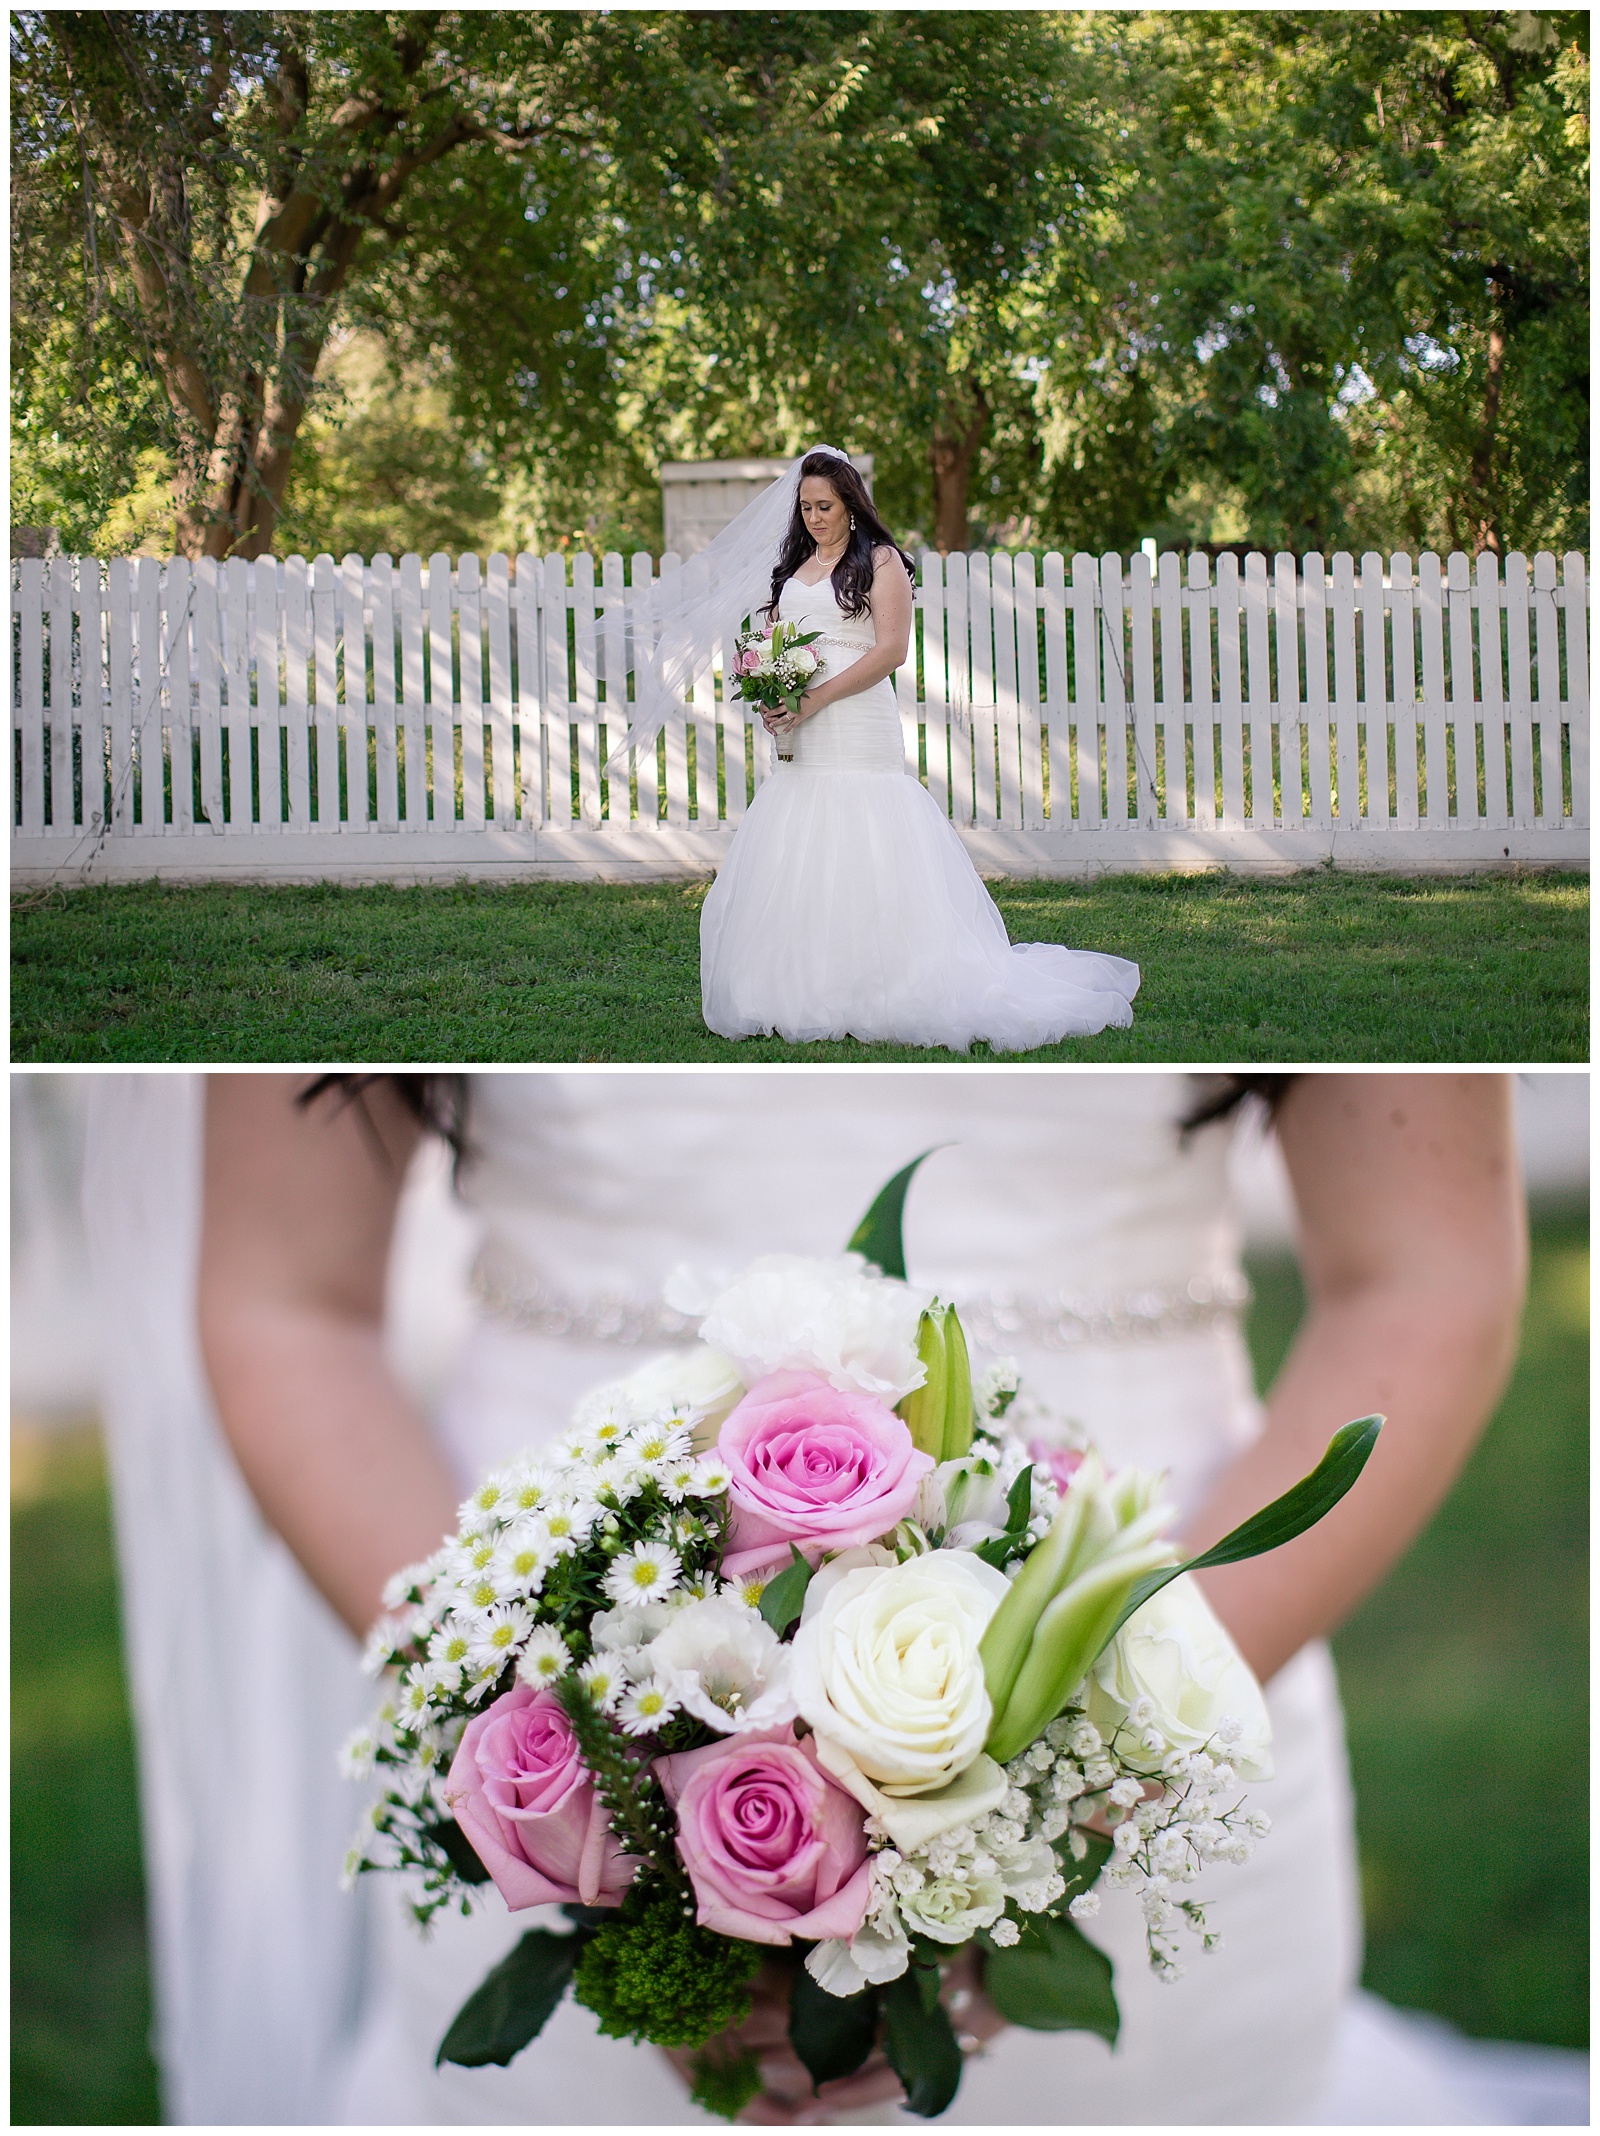 Wedding photography at Mahaffie Farmstead in Olathe, Kansas.